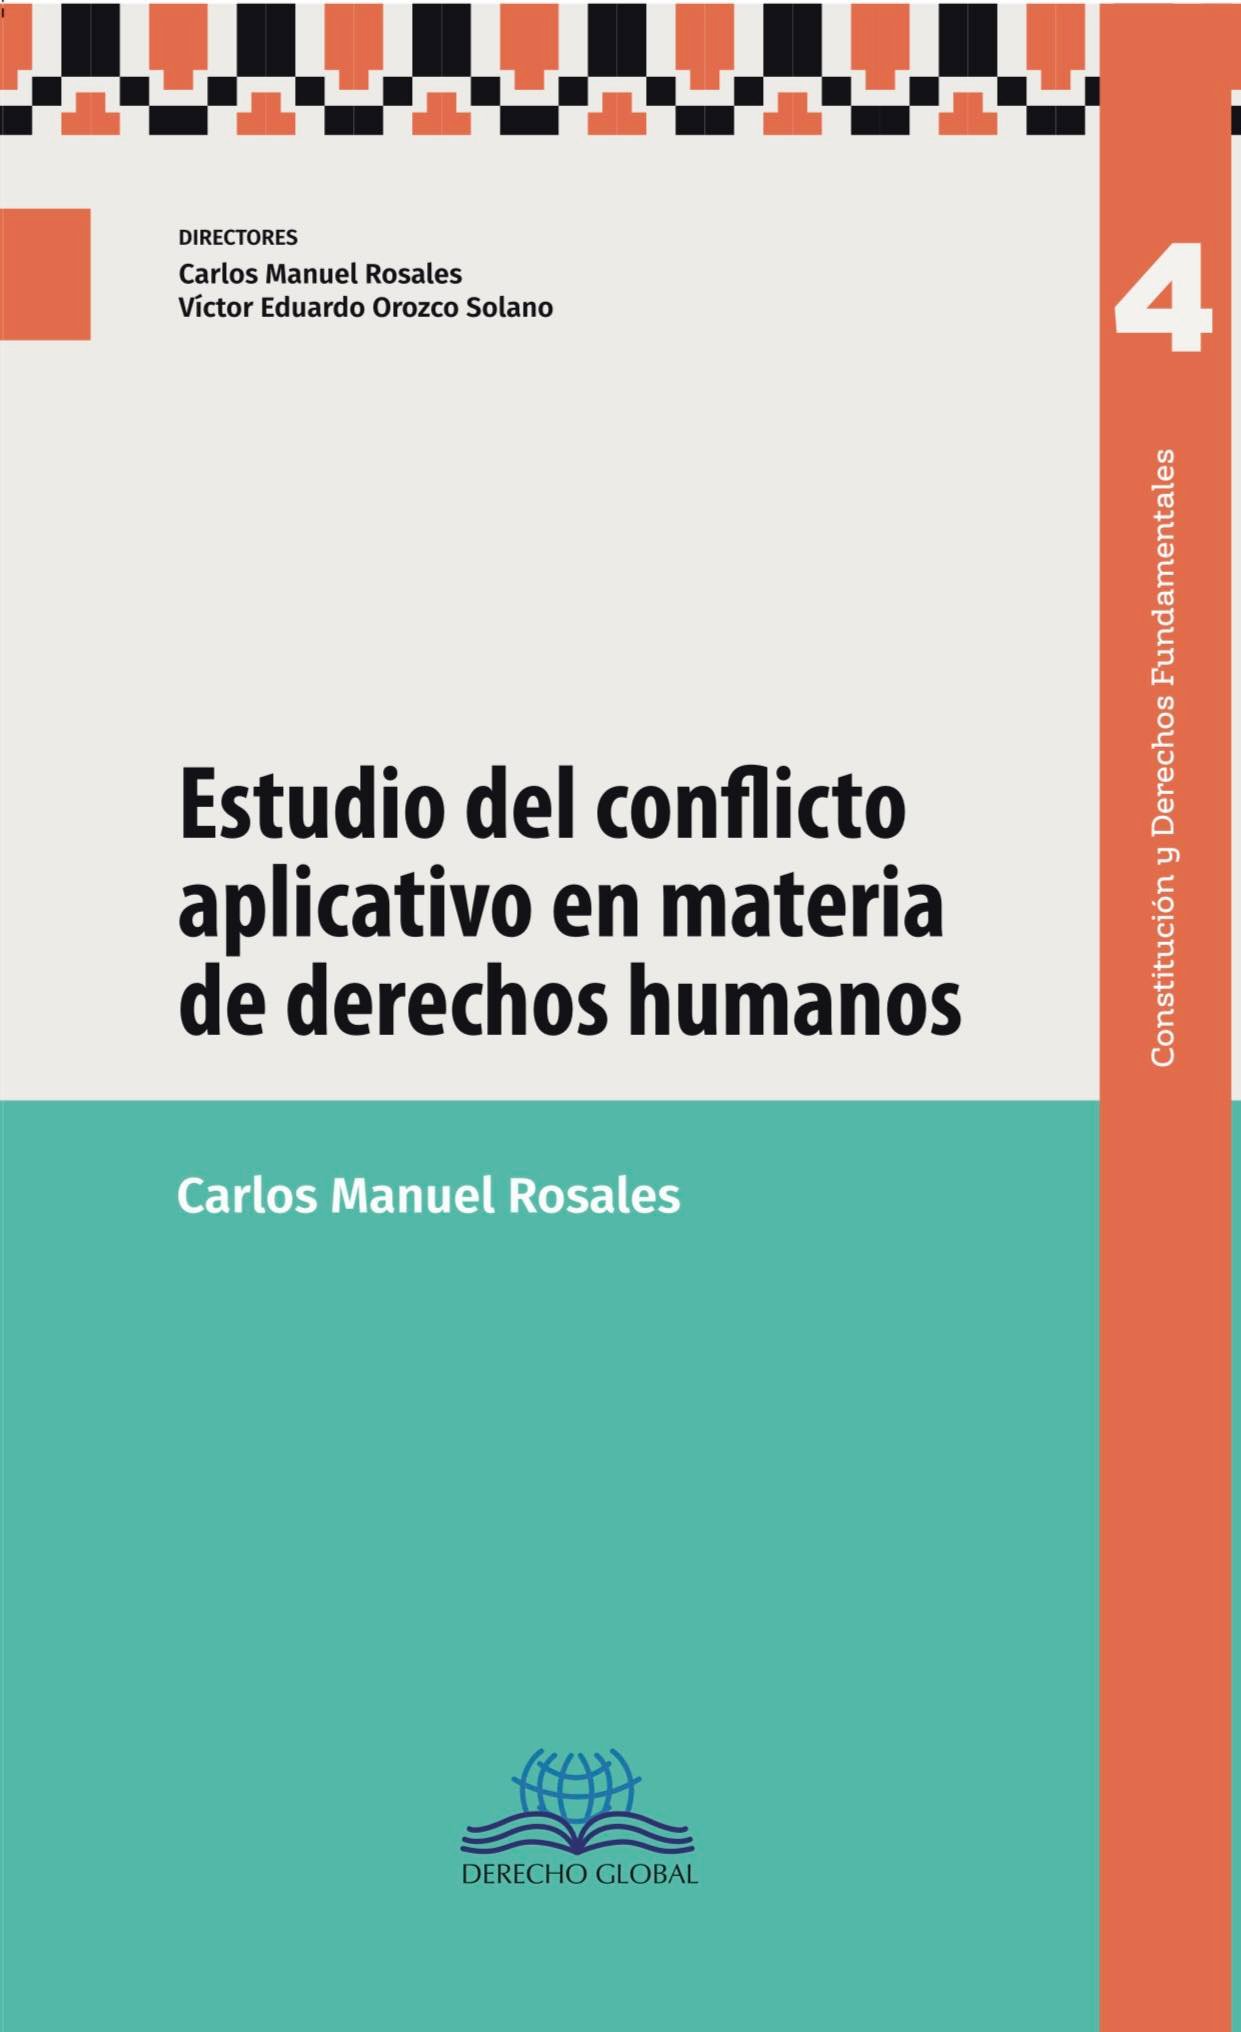 Estudio del conflicto aplicativo en materia de derechos humanos